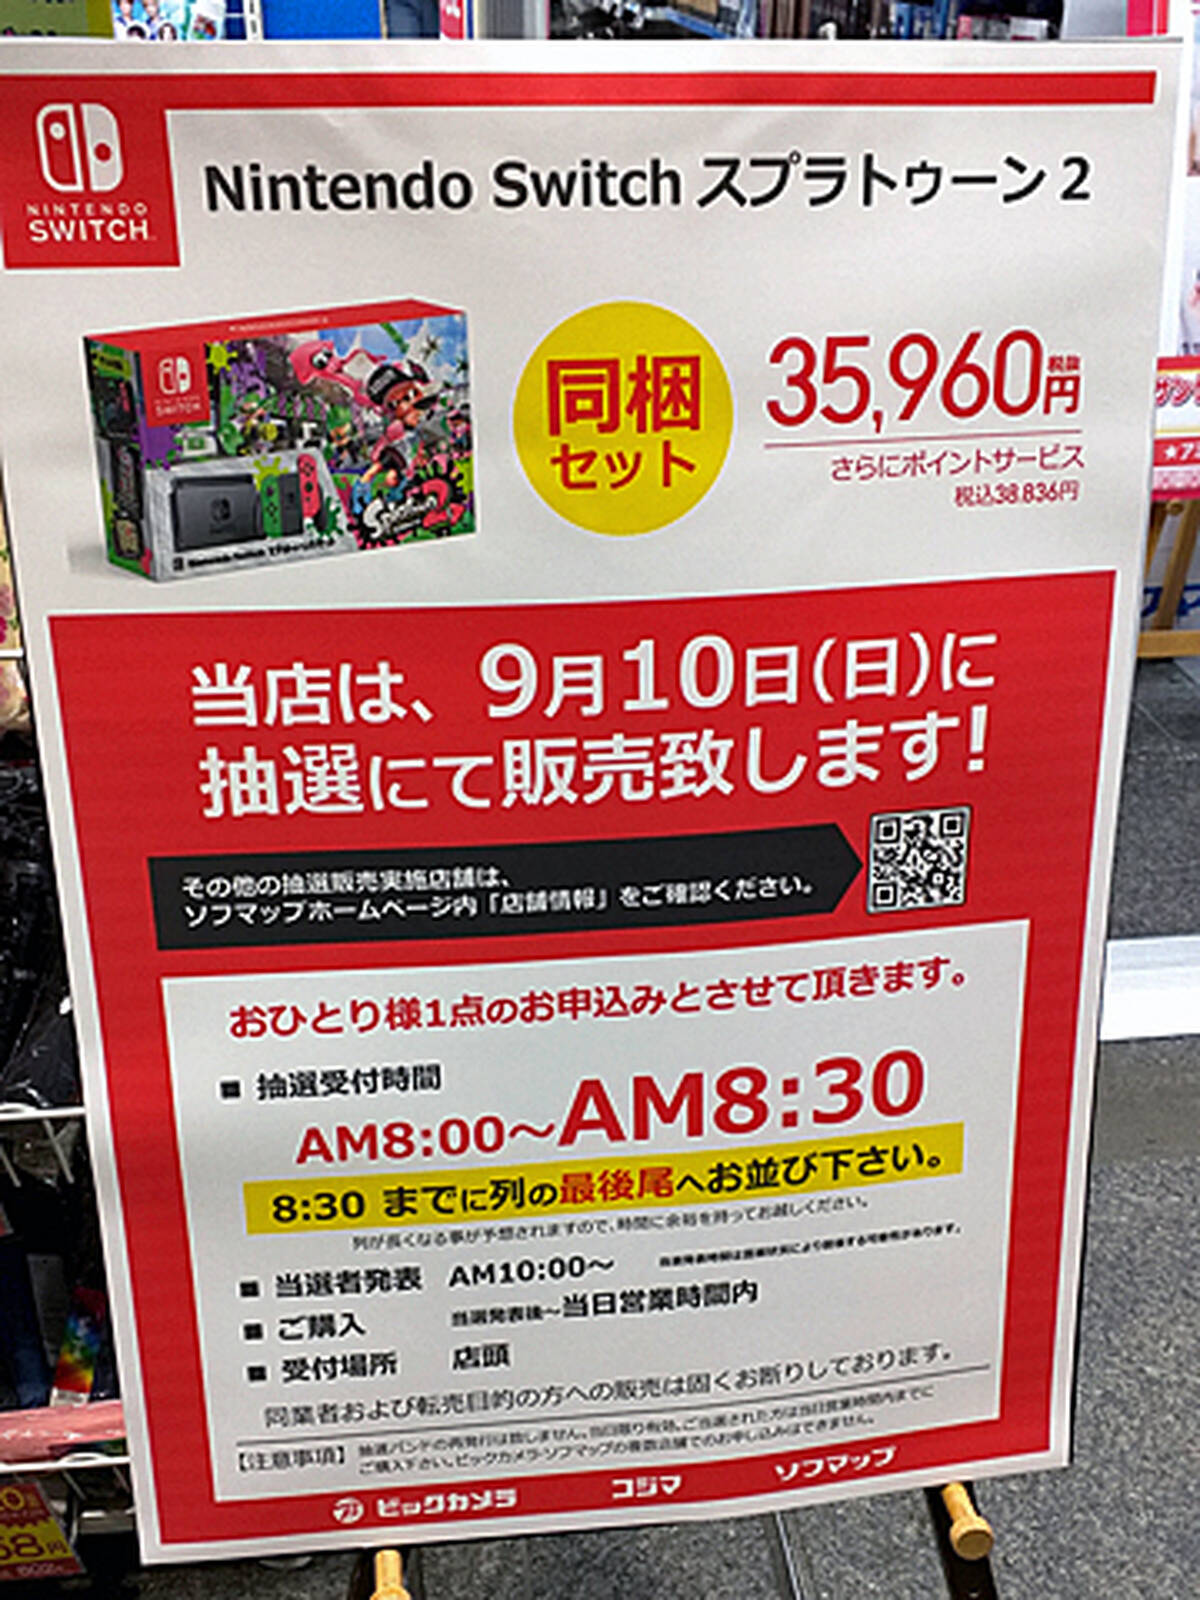 ビックカメラグループで Nintendo Switch の抽選販売を9月10日 日 に実施 秋葉原ではビックカメラakiba ソフマップの2店舗が対象 アキバ総研